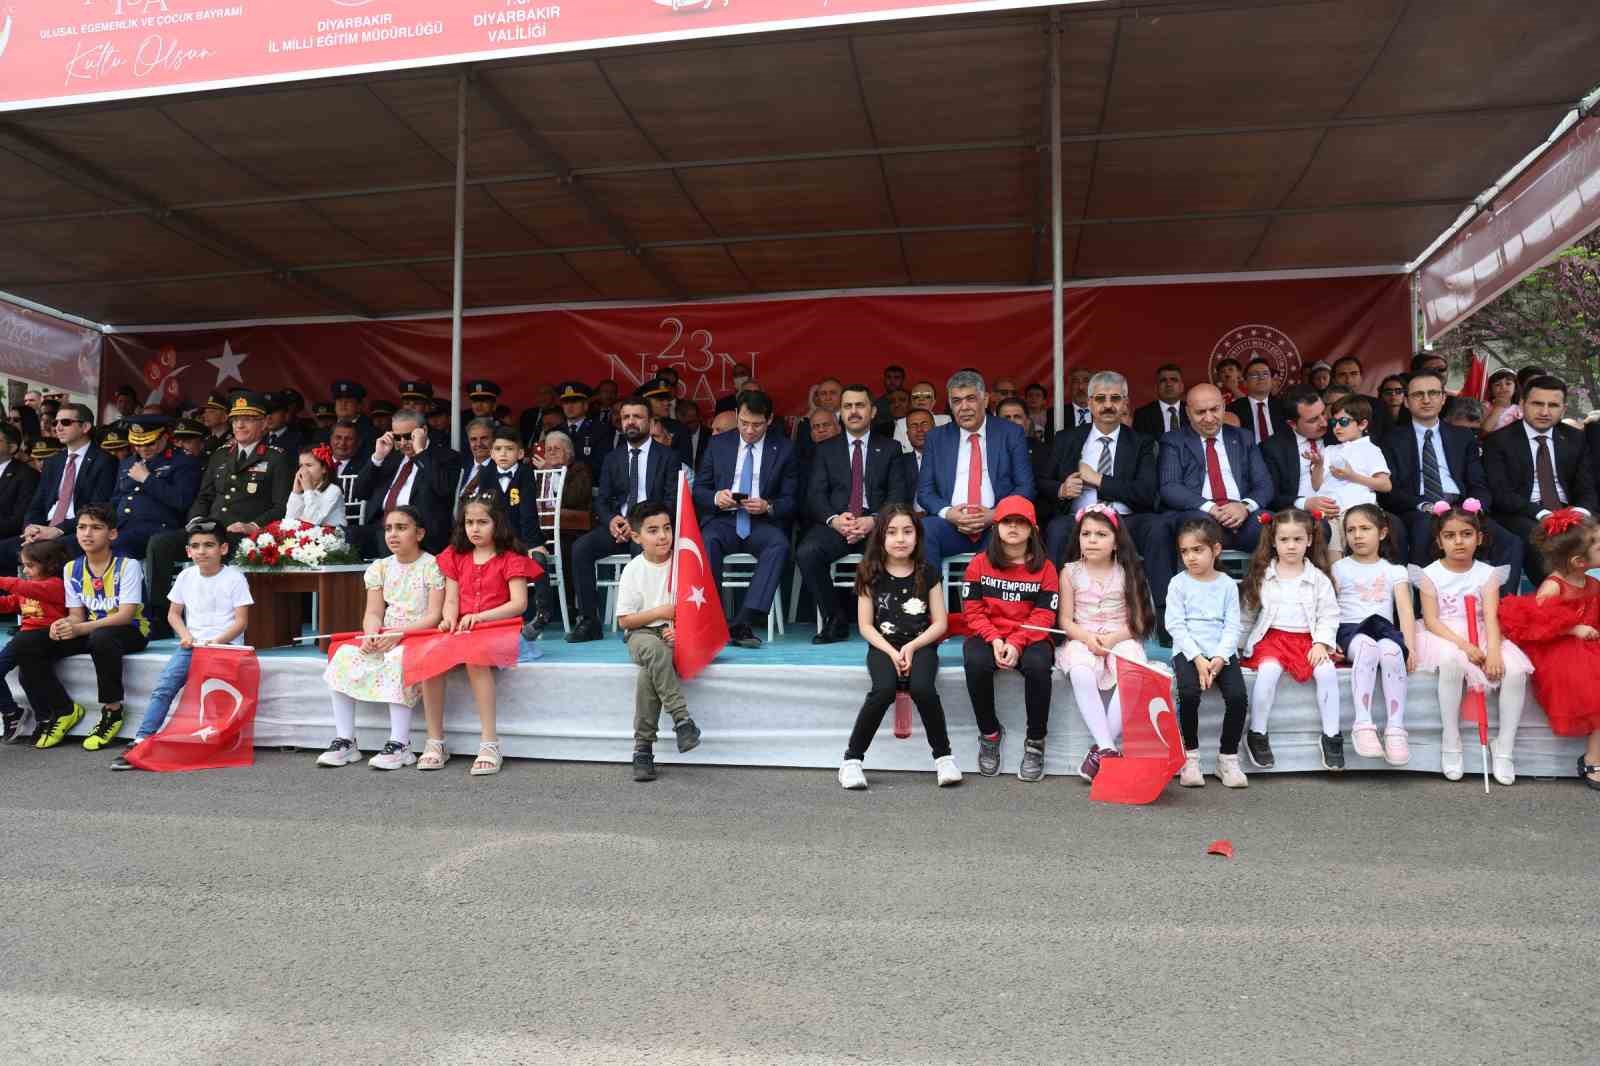 Diyarbakır’da 23 Nisan kutlamalarında Fatih Sultan Mehmet, Ali Gaffar Okkan ve Naim Süleymanoğlu canlandırıldı
